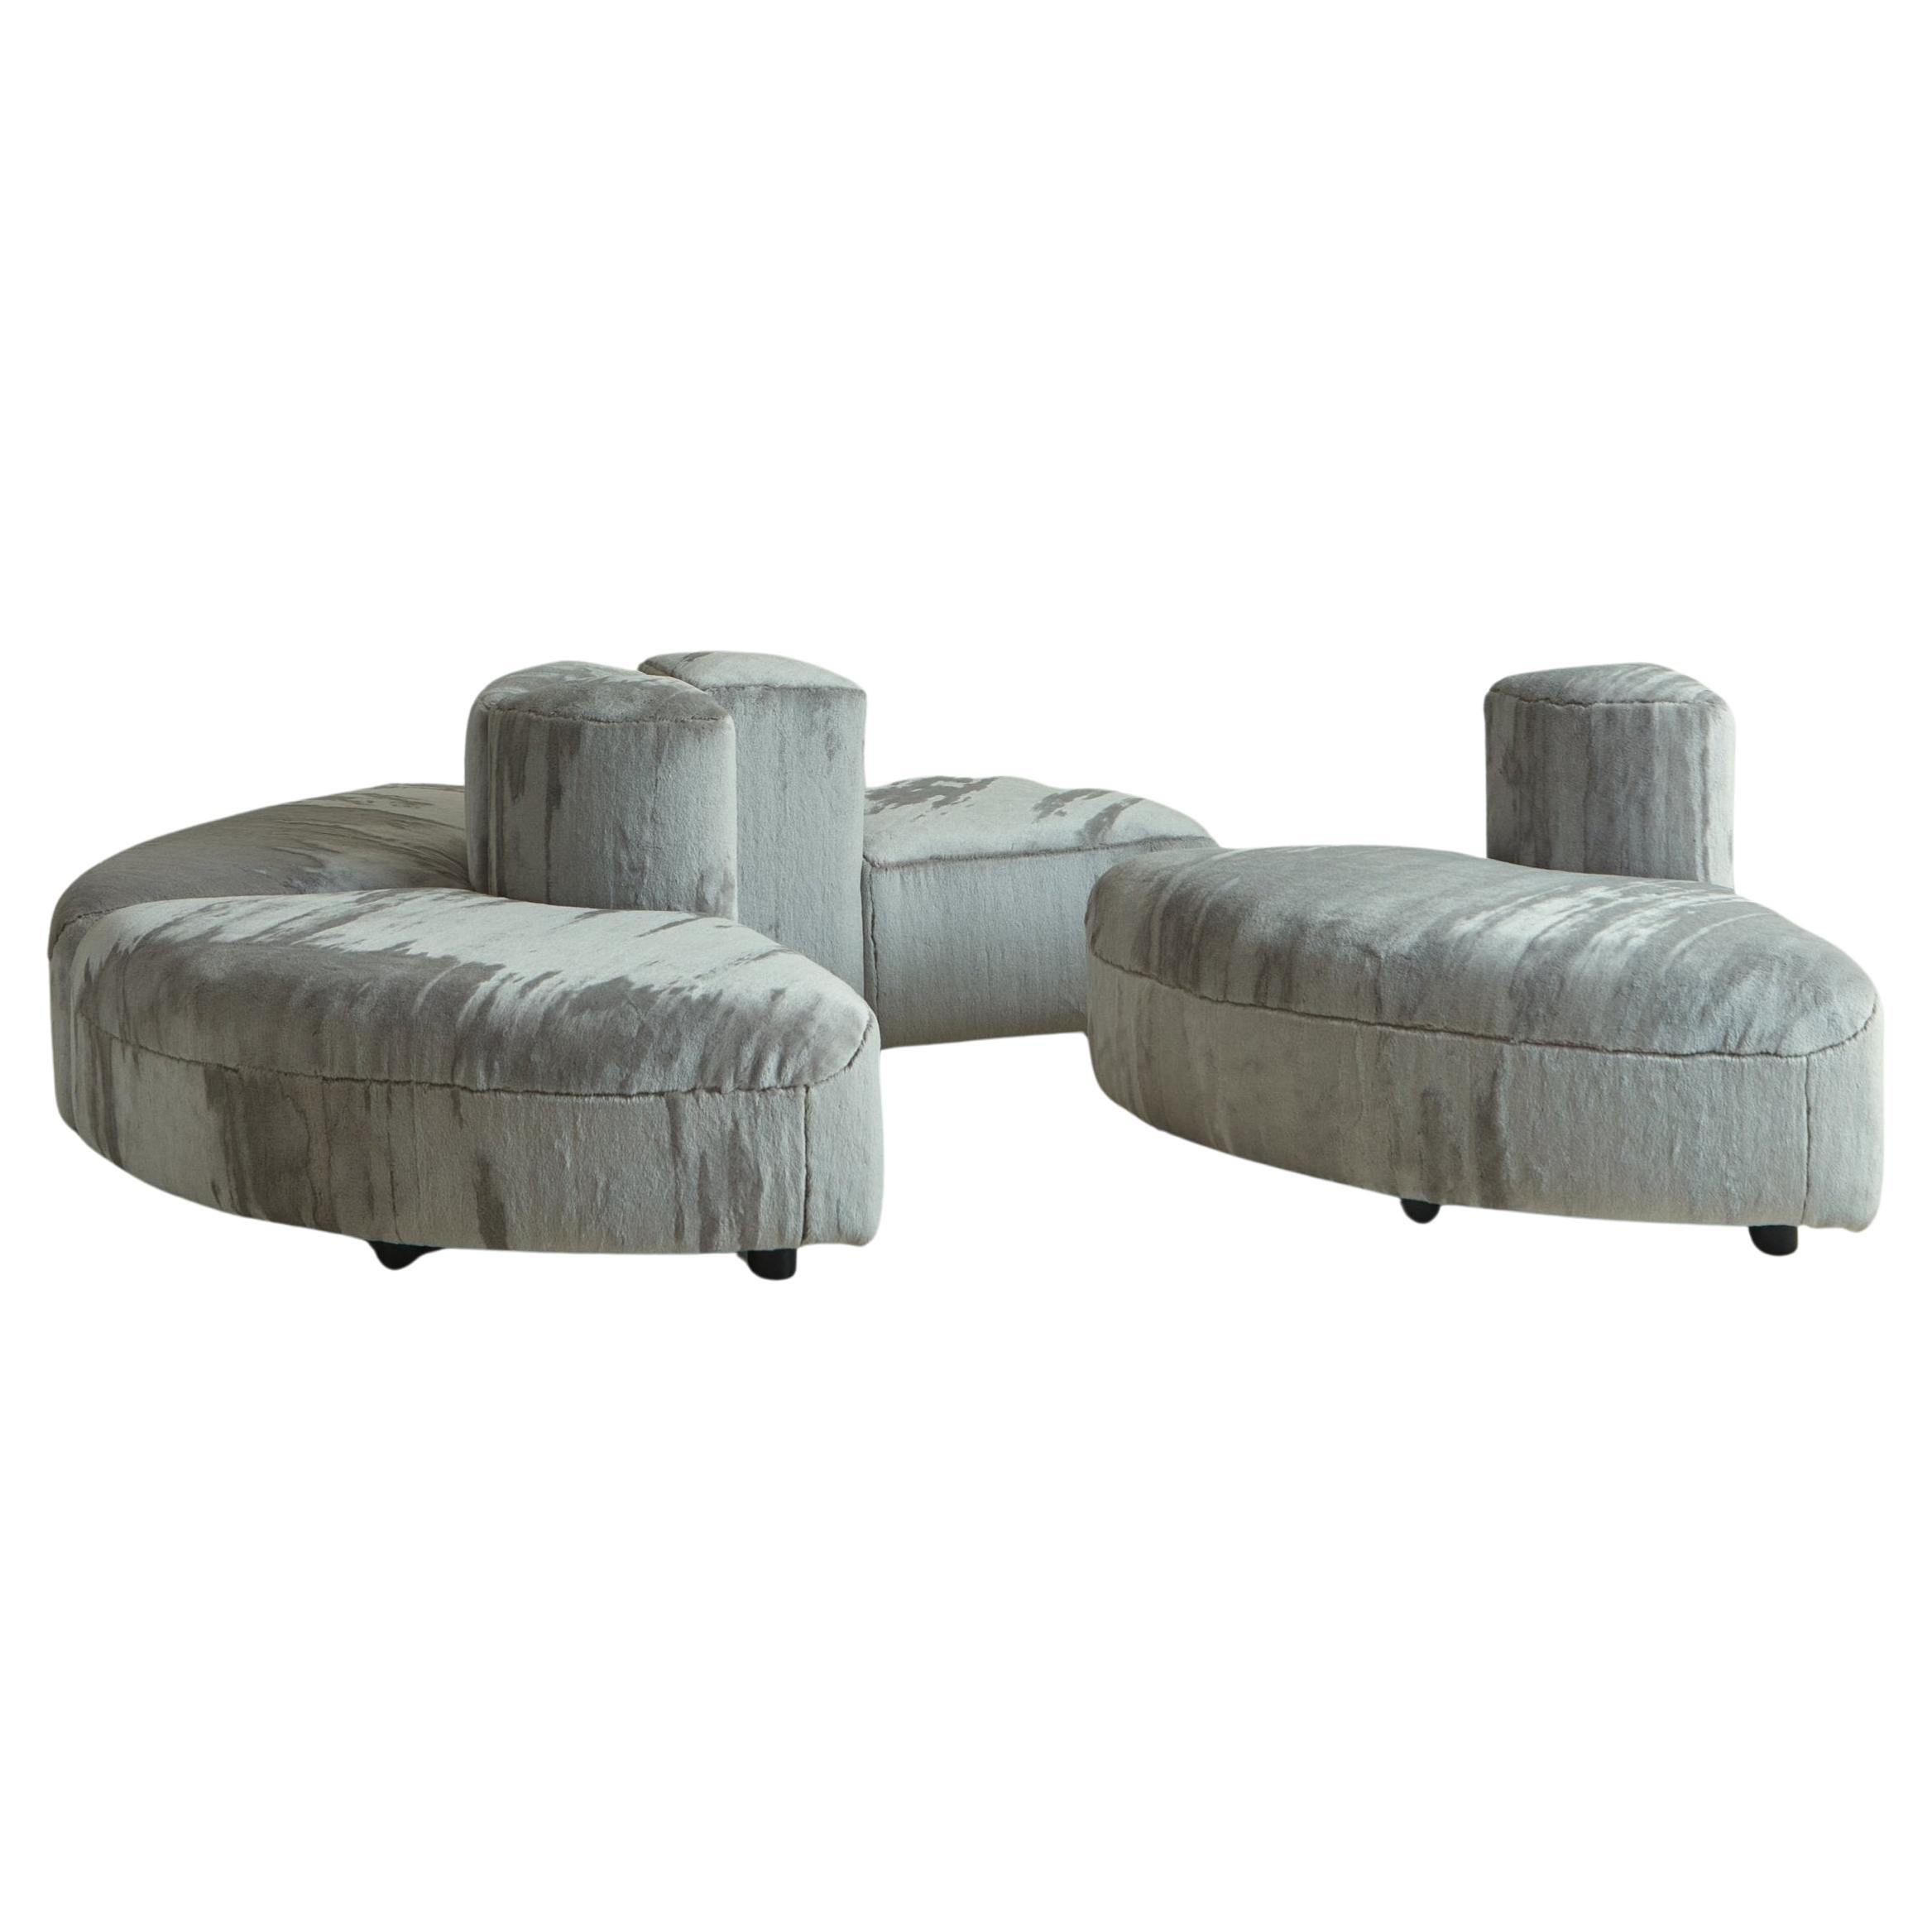 ‘Novemila 9000' Modular Sofa in Gray Striated Velvet by Tito Agnoli for Arflex For Sale